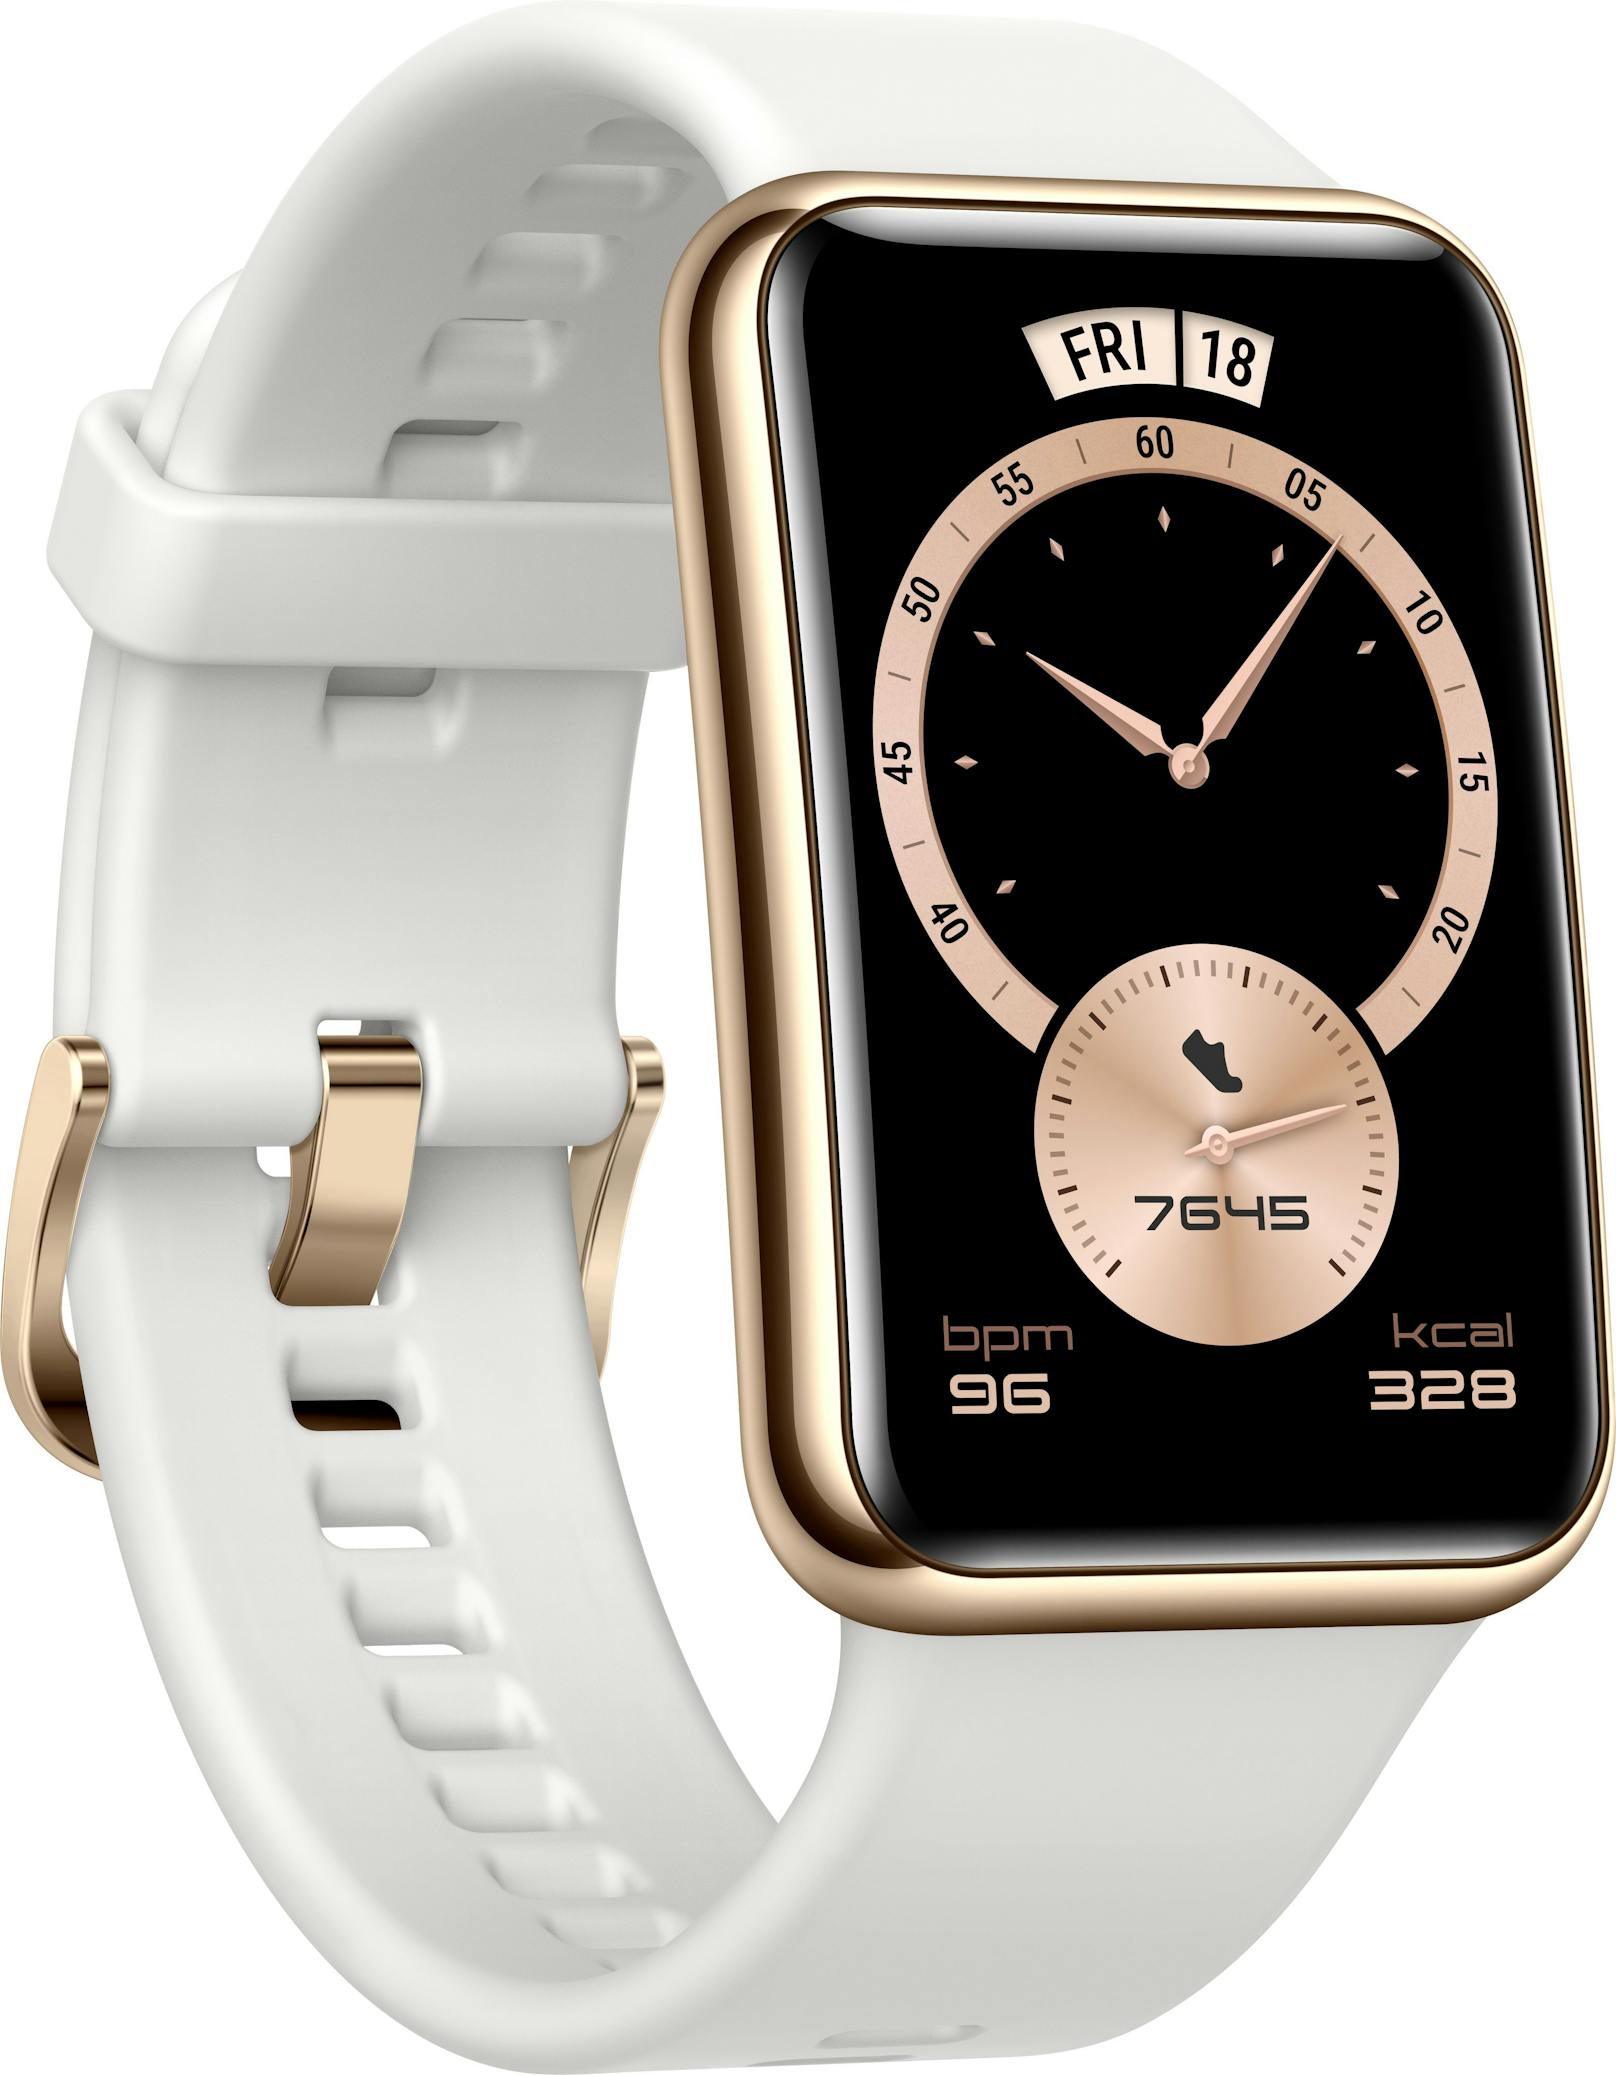 Sie ist ein Design-Upgrade der bereits verkauften Huawei Watch Fit mit poliertem Edelstahlgehäuse und Kunststoff-Band.